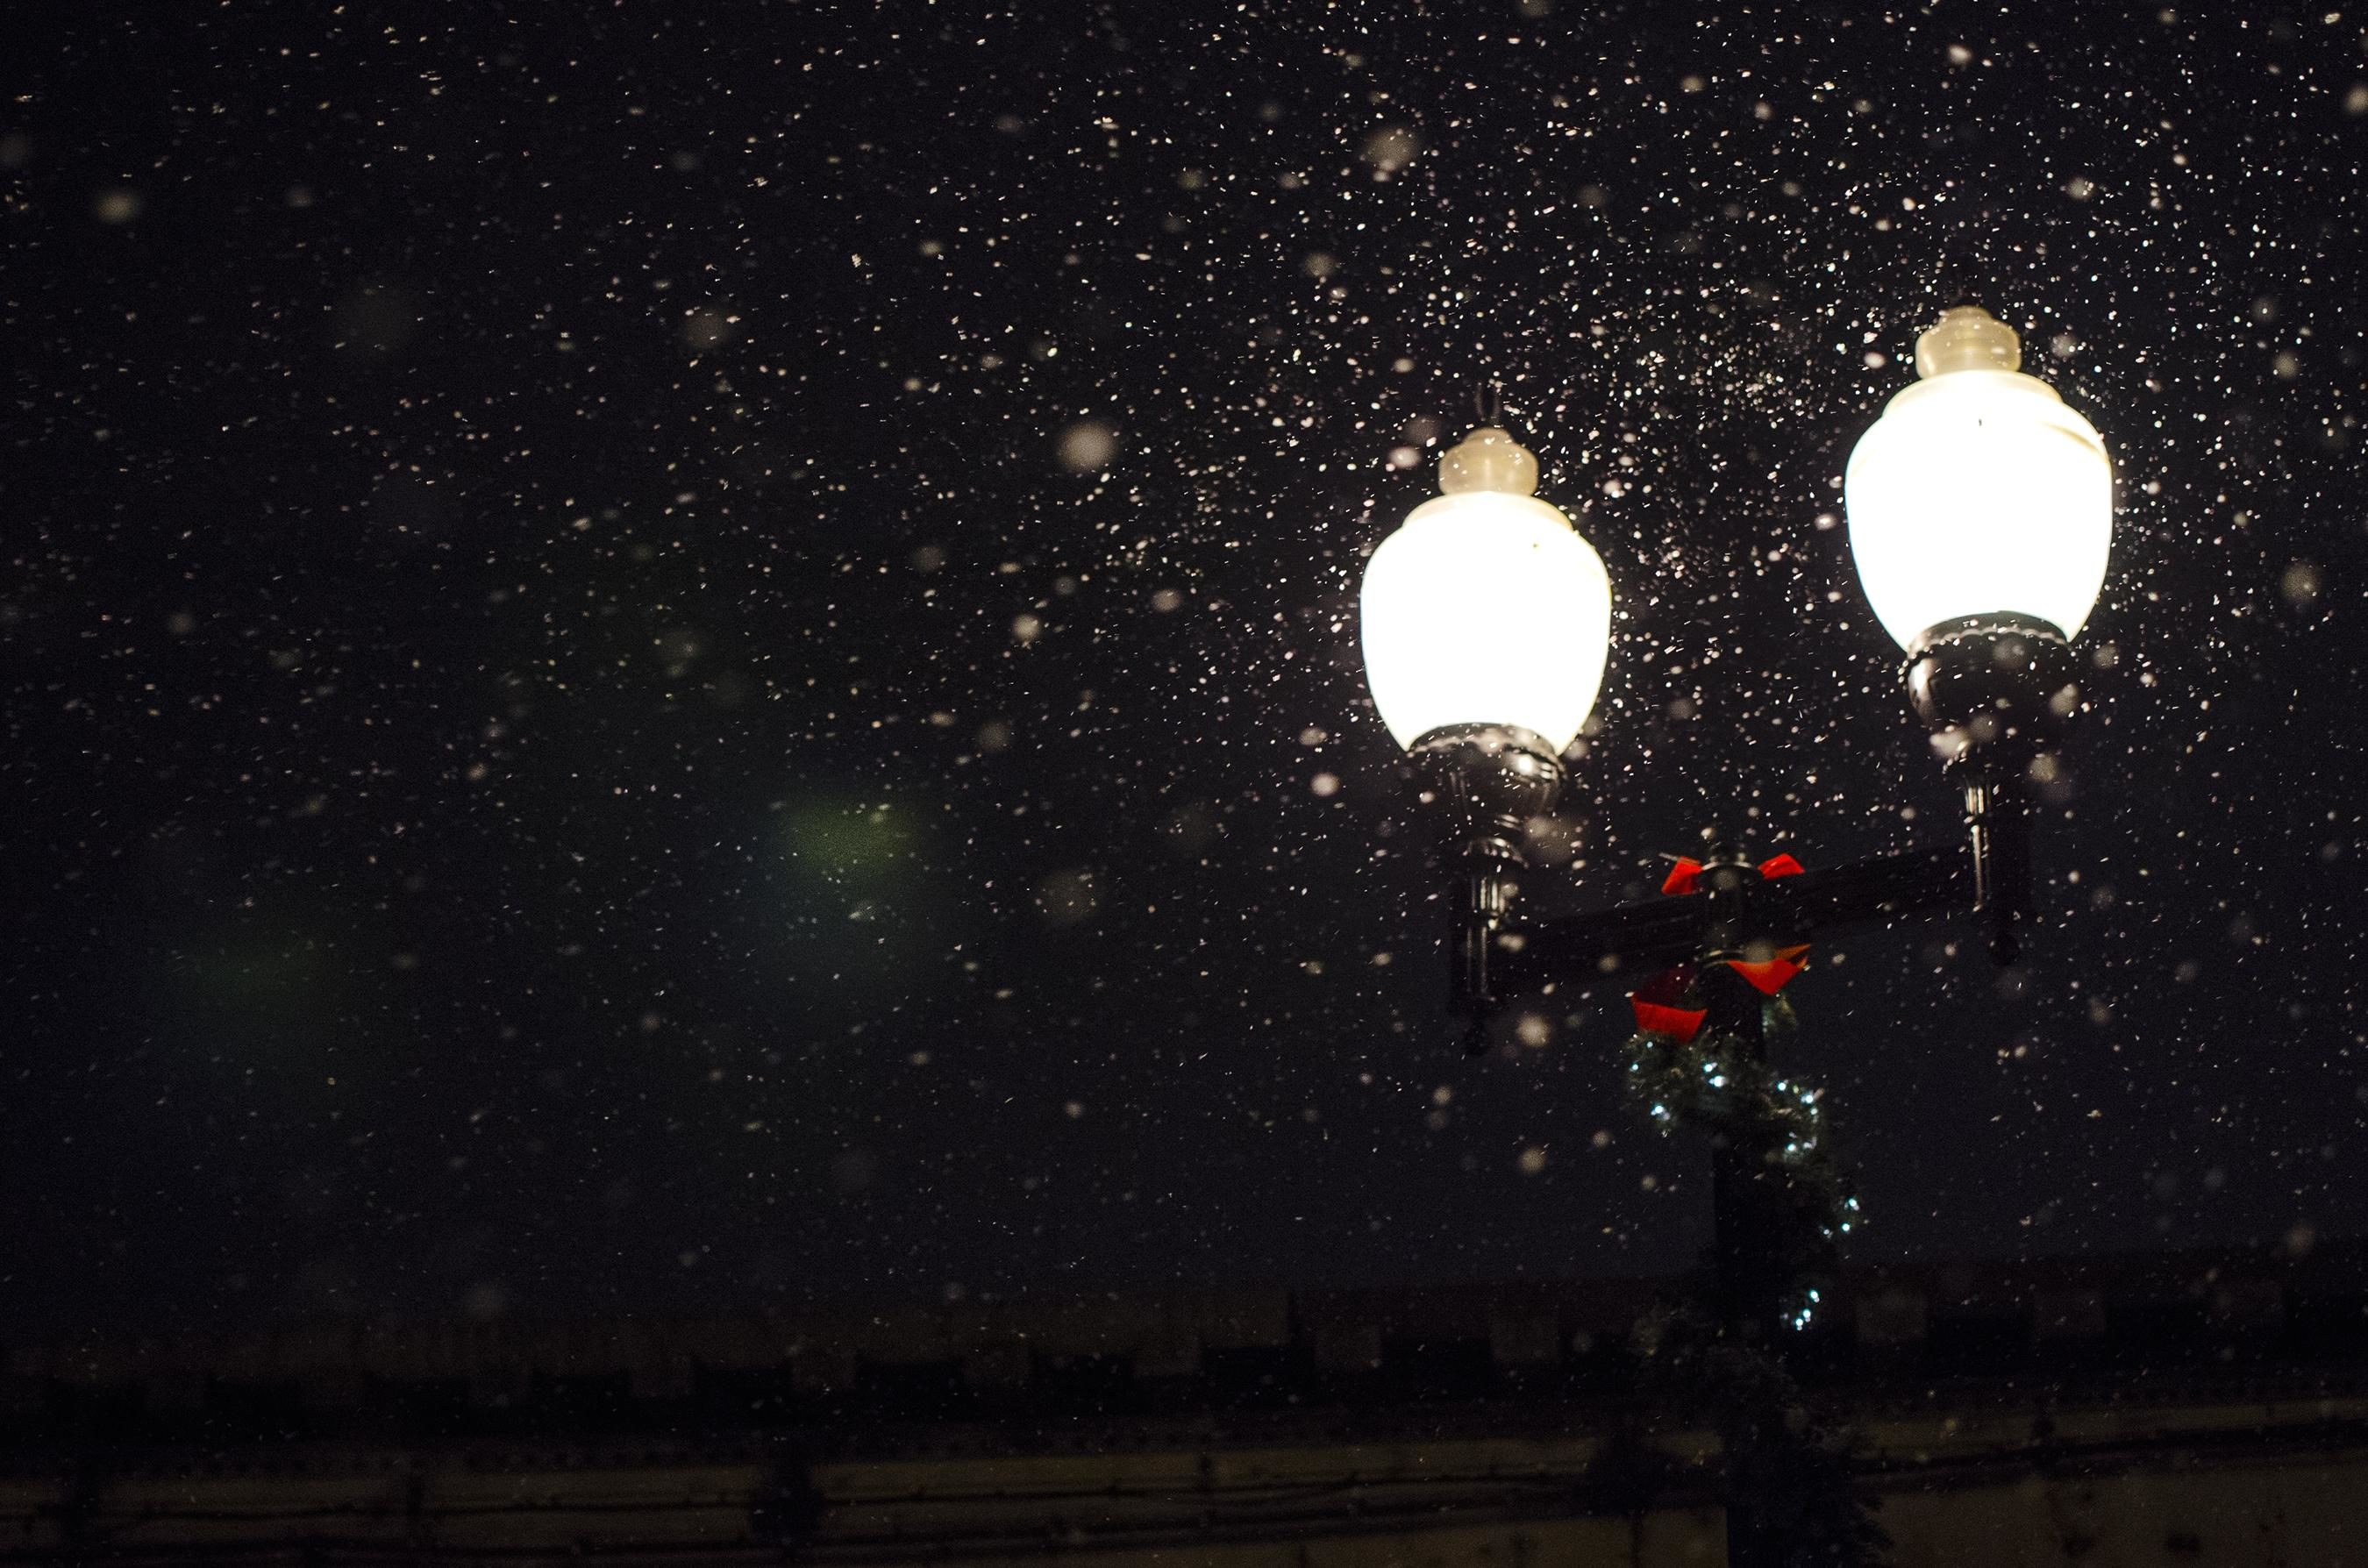 夜晚图片唯美下雪图片